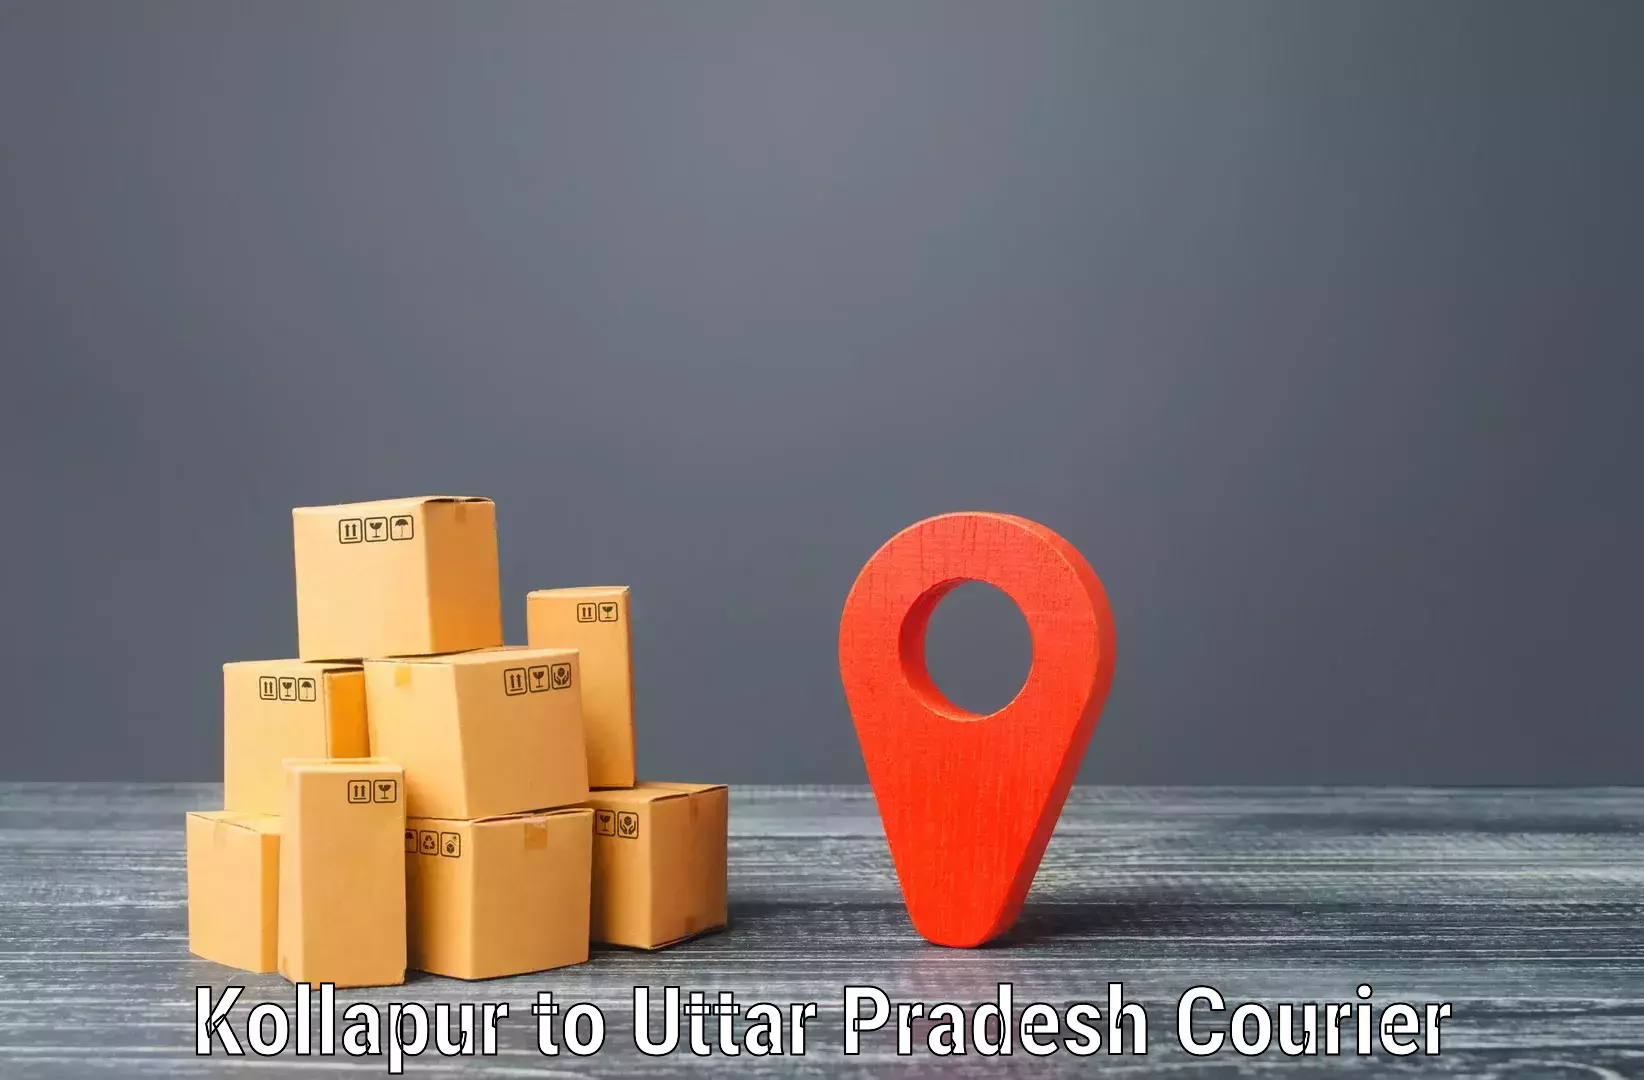 Express postal services Kollapur to Mirzapur